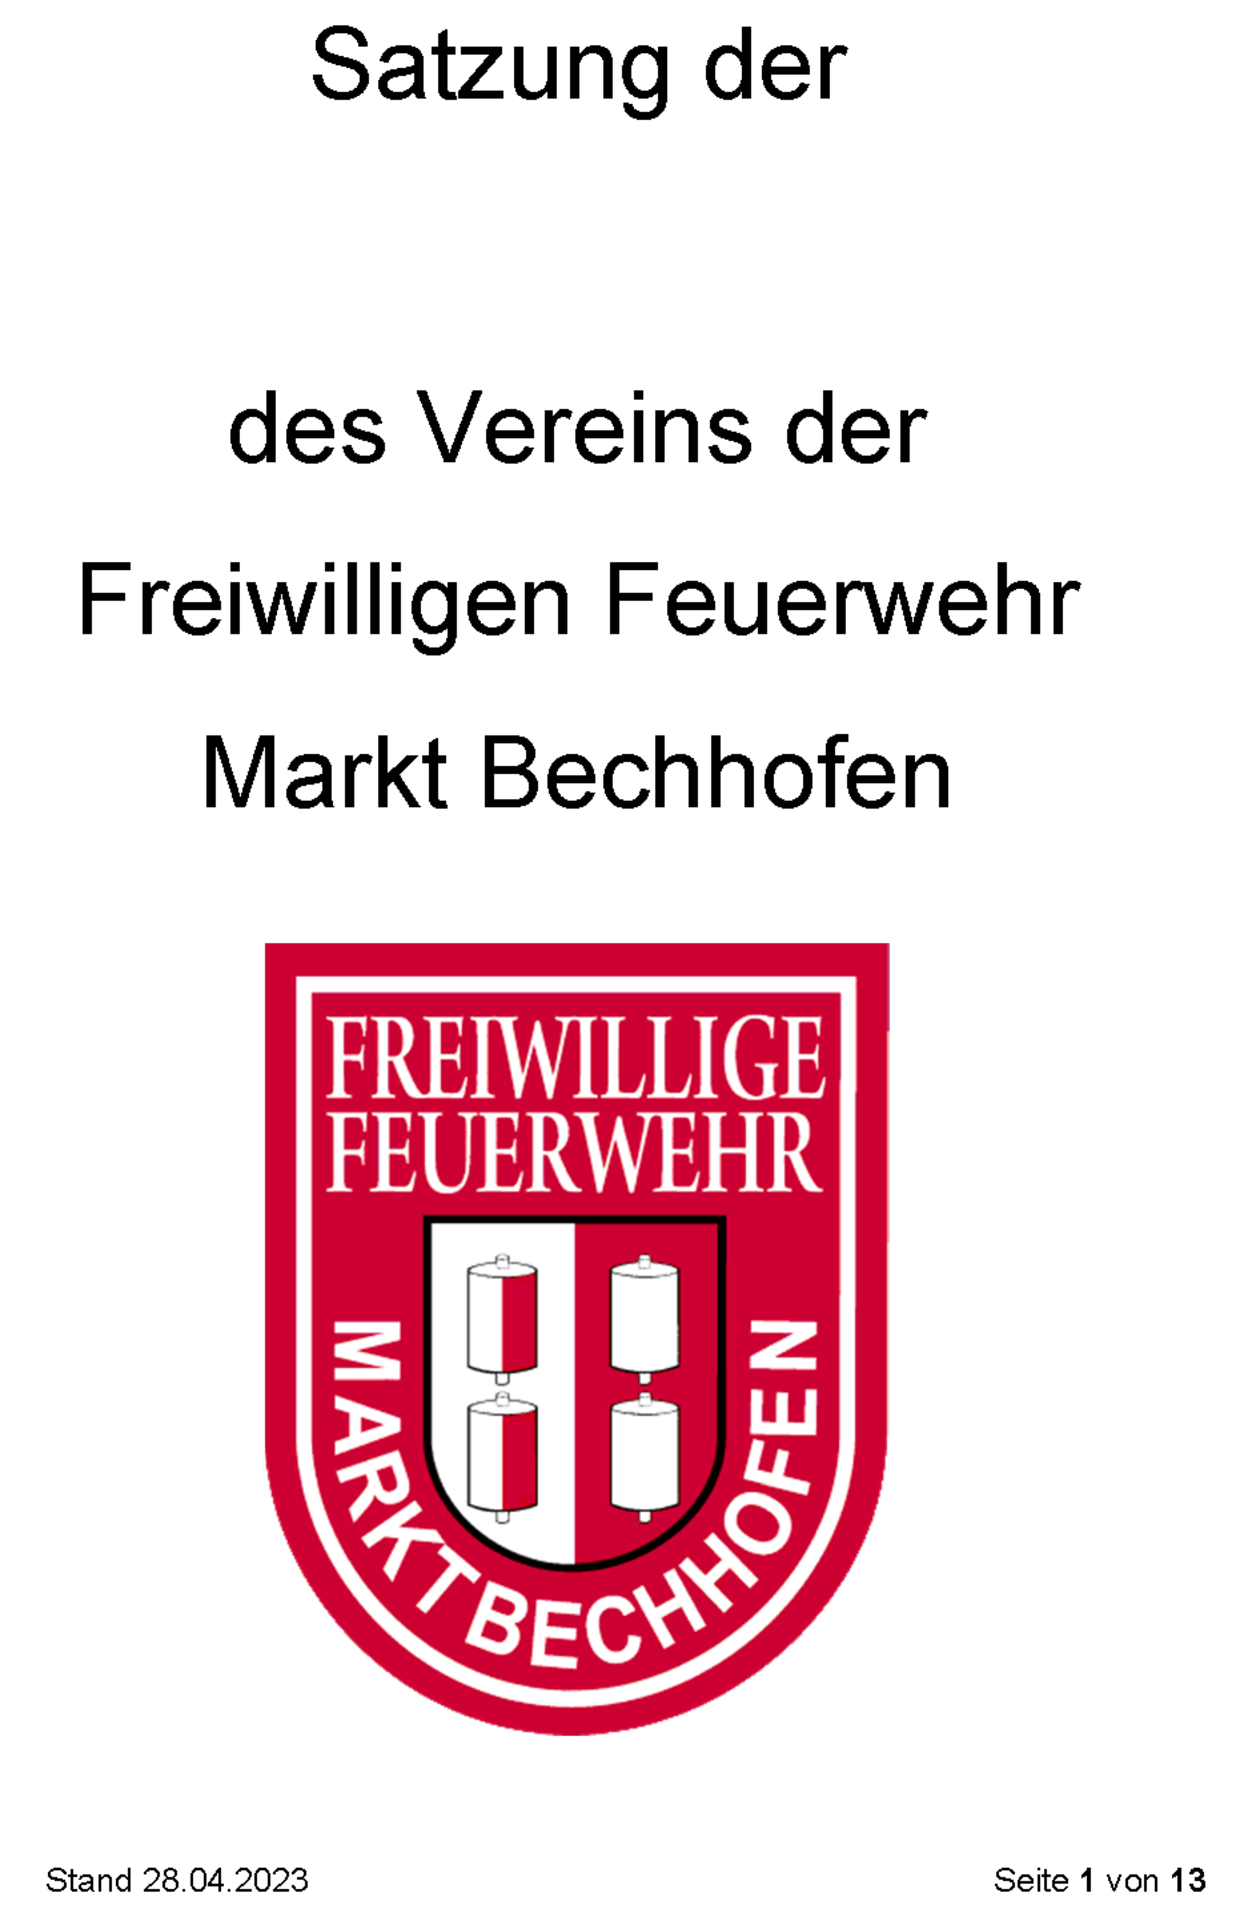 Satzung des Feuerwehrvereins Markt Bechhofen e.V. (Stand vom 28.04.2023)